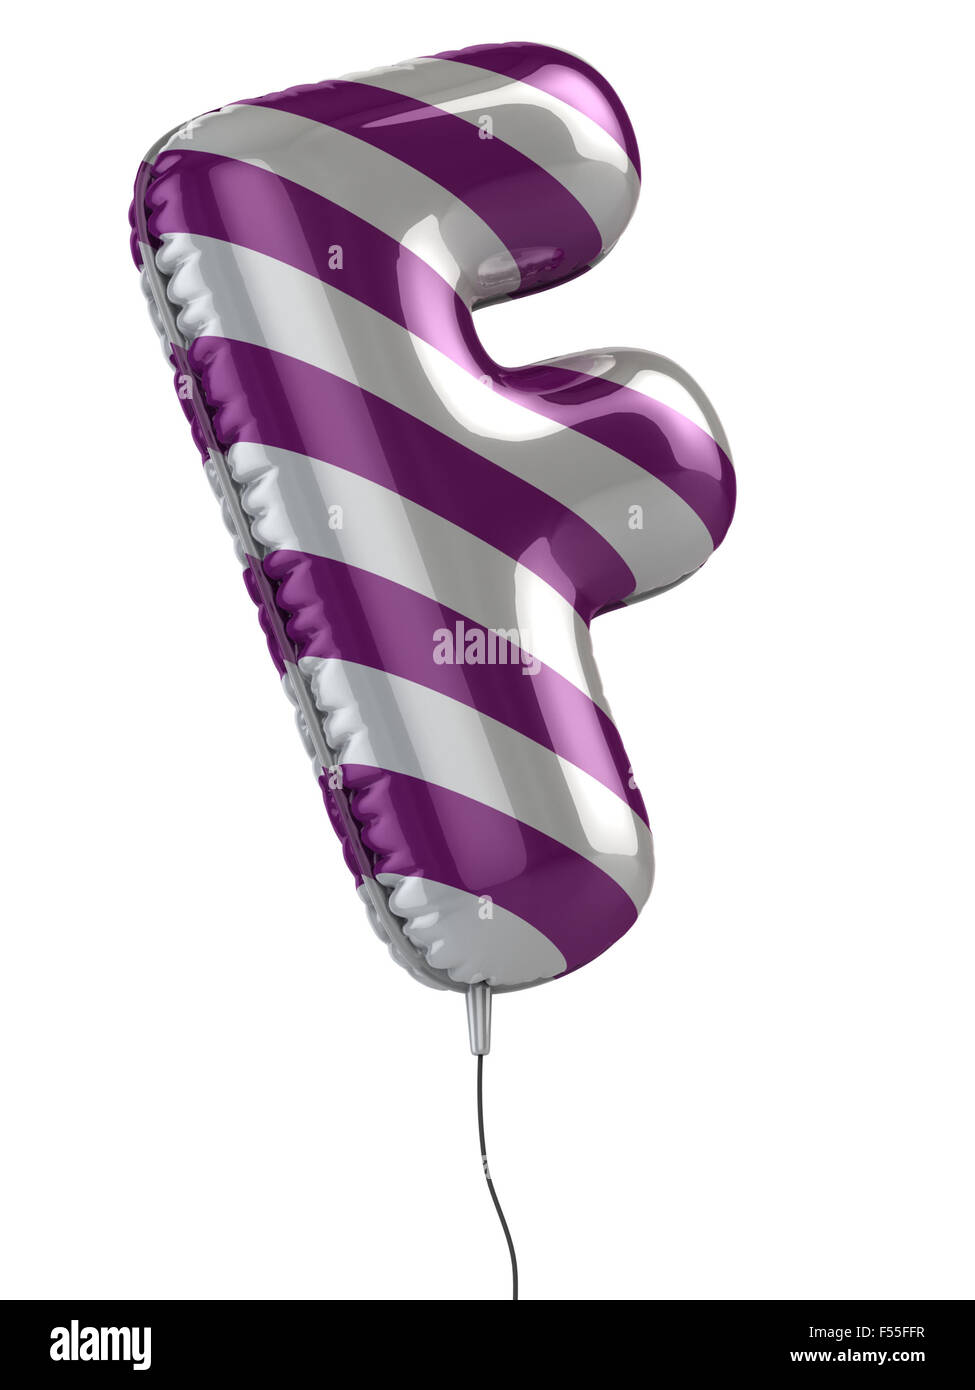 letter f balloon 3d illustration Stock Photo